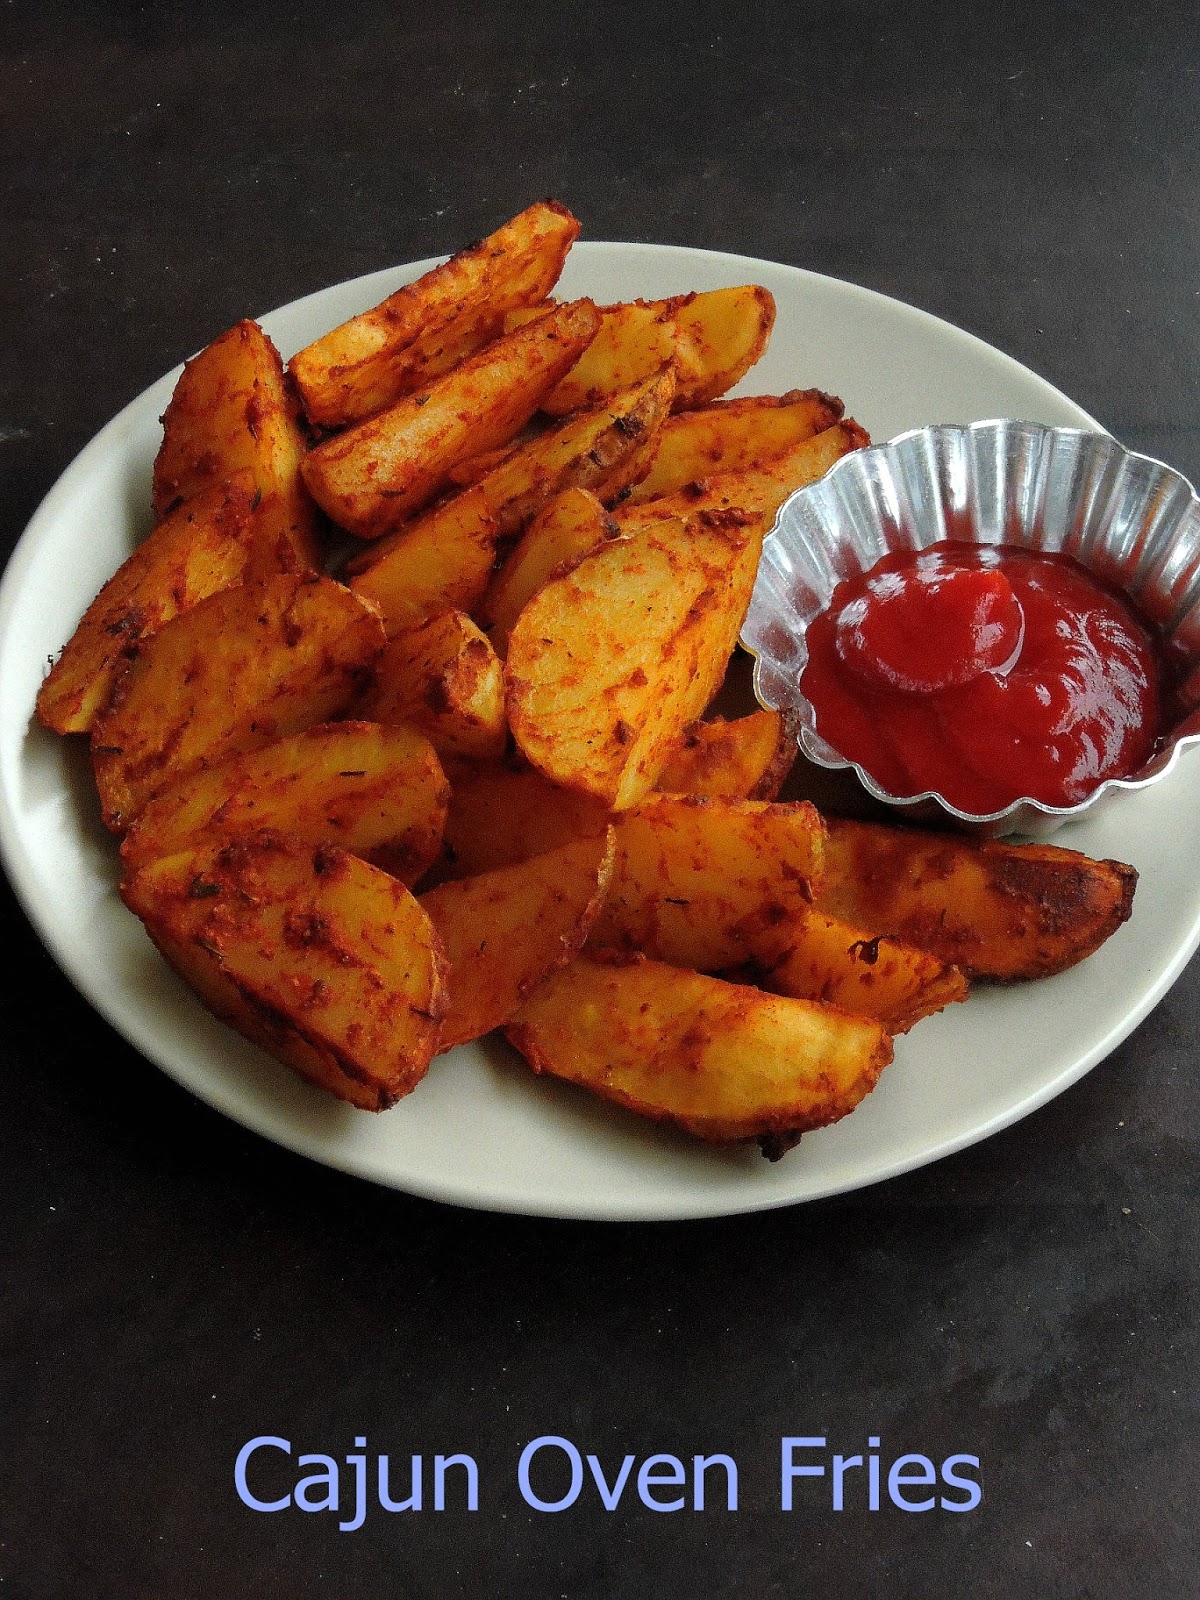 Priya's Versatile Recipes: Cajun Oven Fries/Cajun Baked Vegan Potato Wedges